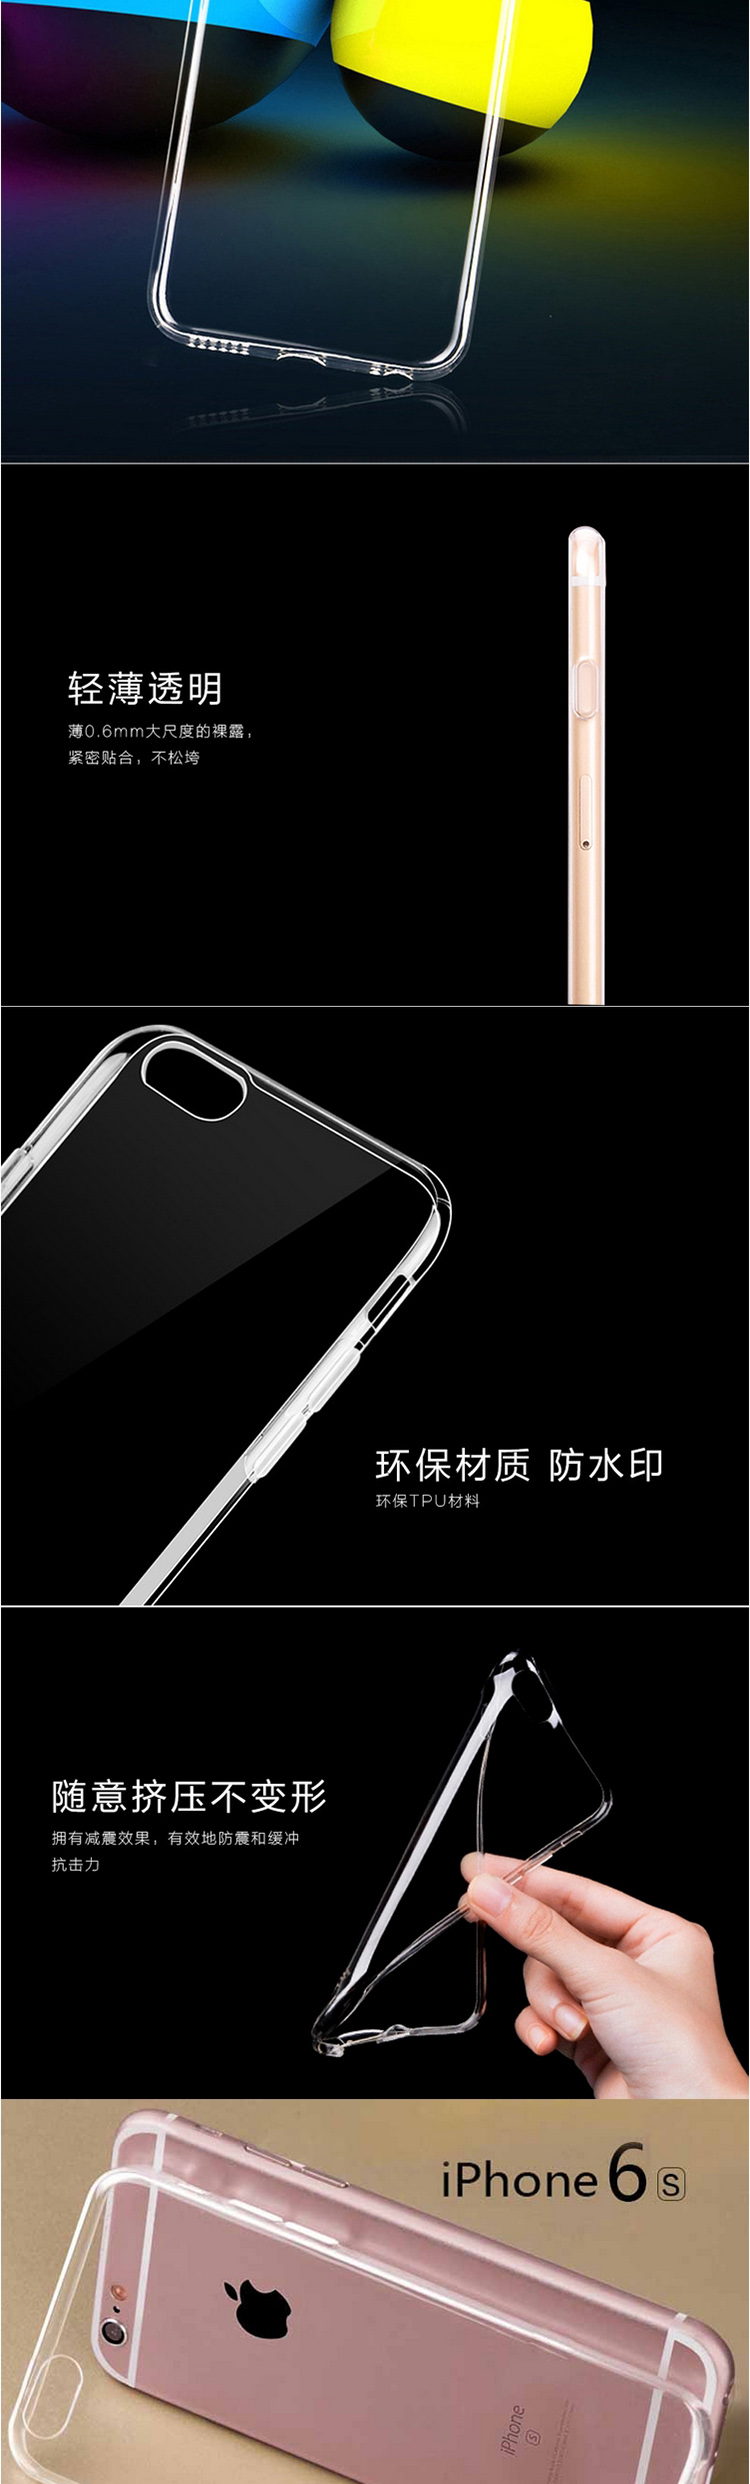 苹果iPhone 6/6s手机壳透明硅胶皮套 软壳/透明套/保护壳/手机套 30个优惠装